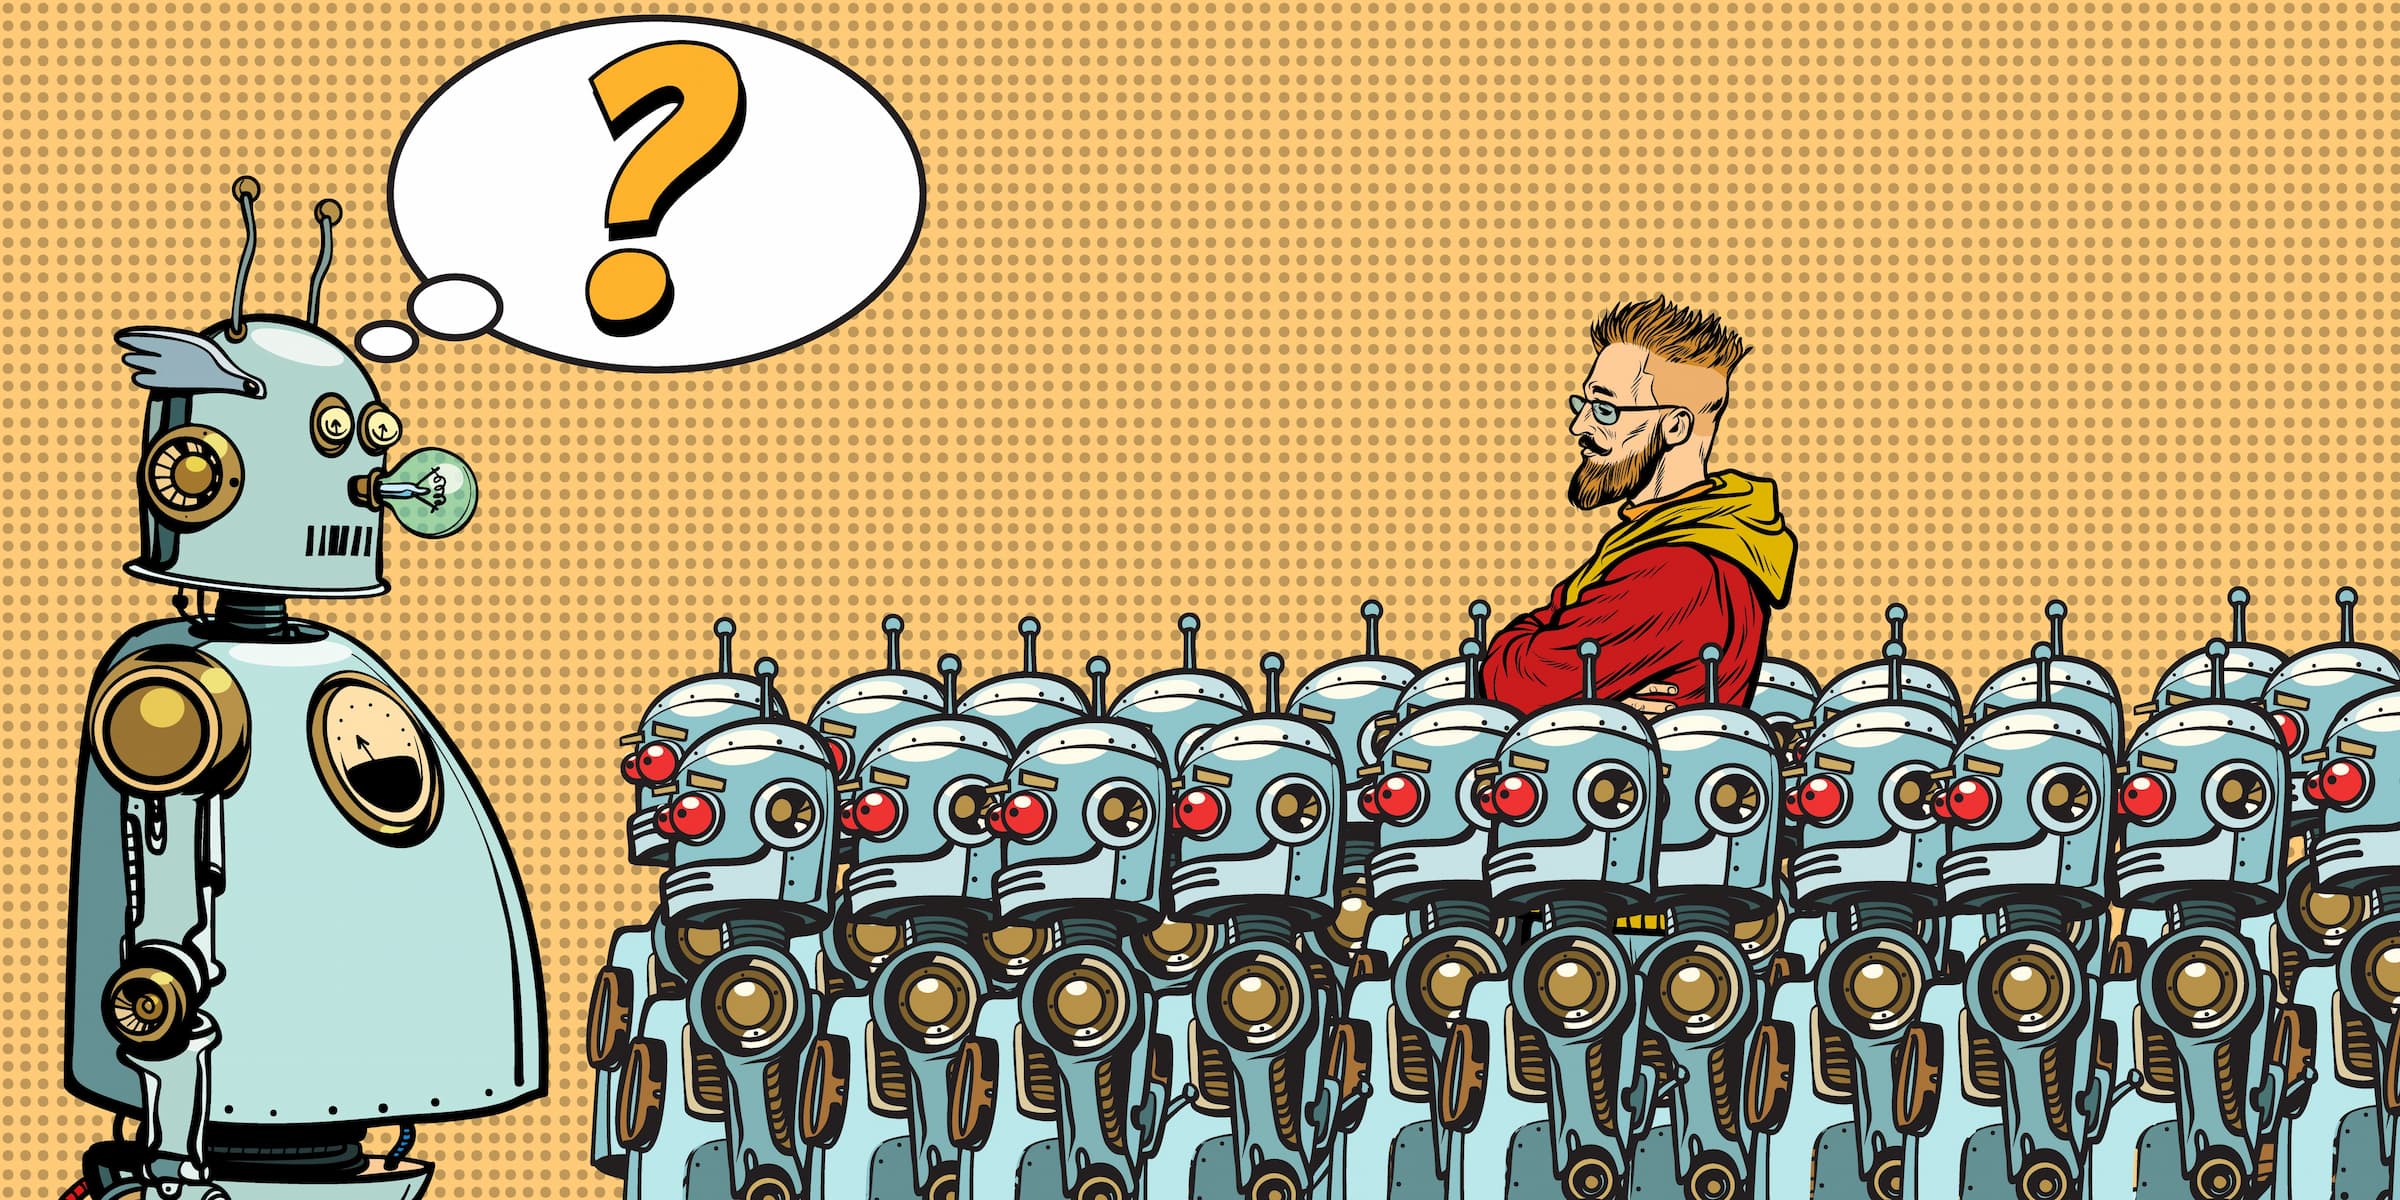 Non, les robots ne voleront pas les emplois manufacturiers des humains